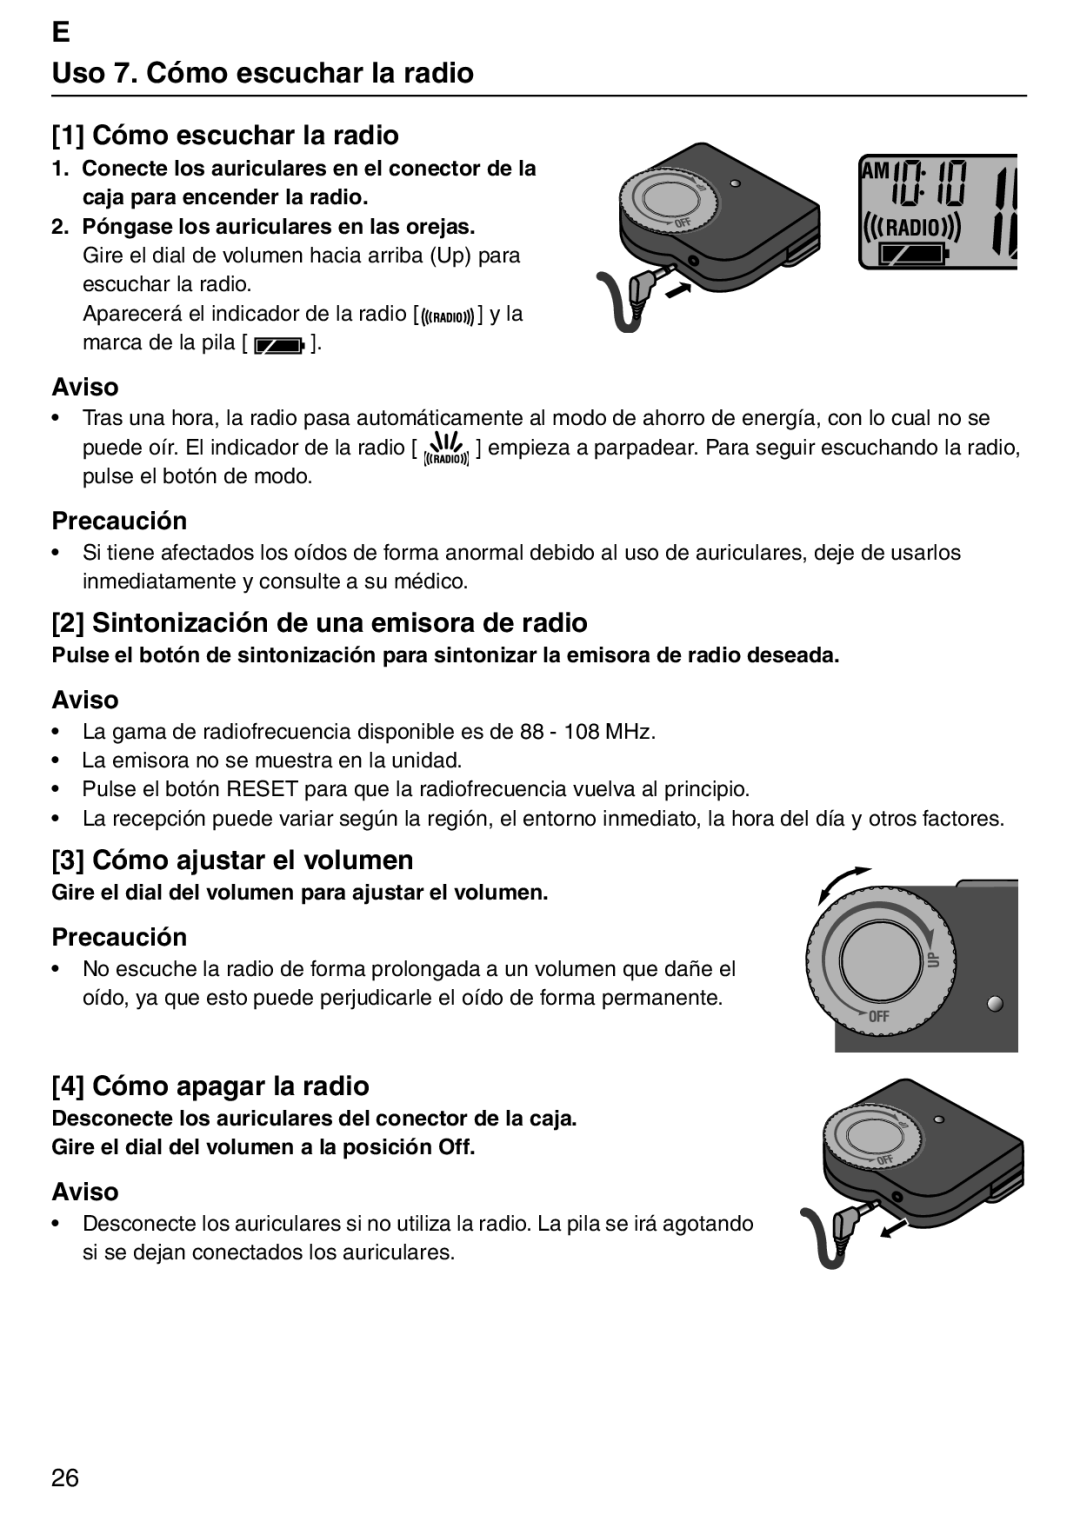 Tanita PD640 E Uso 7. Cómo escuchar la radio, 1 Cómo escuchar la radio, Sintonización de una emisora de radio, Aviso 